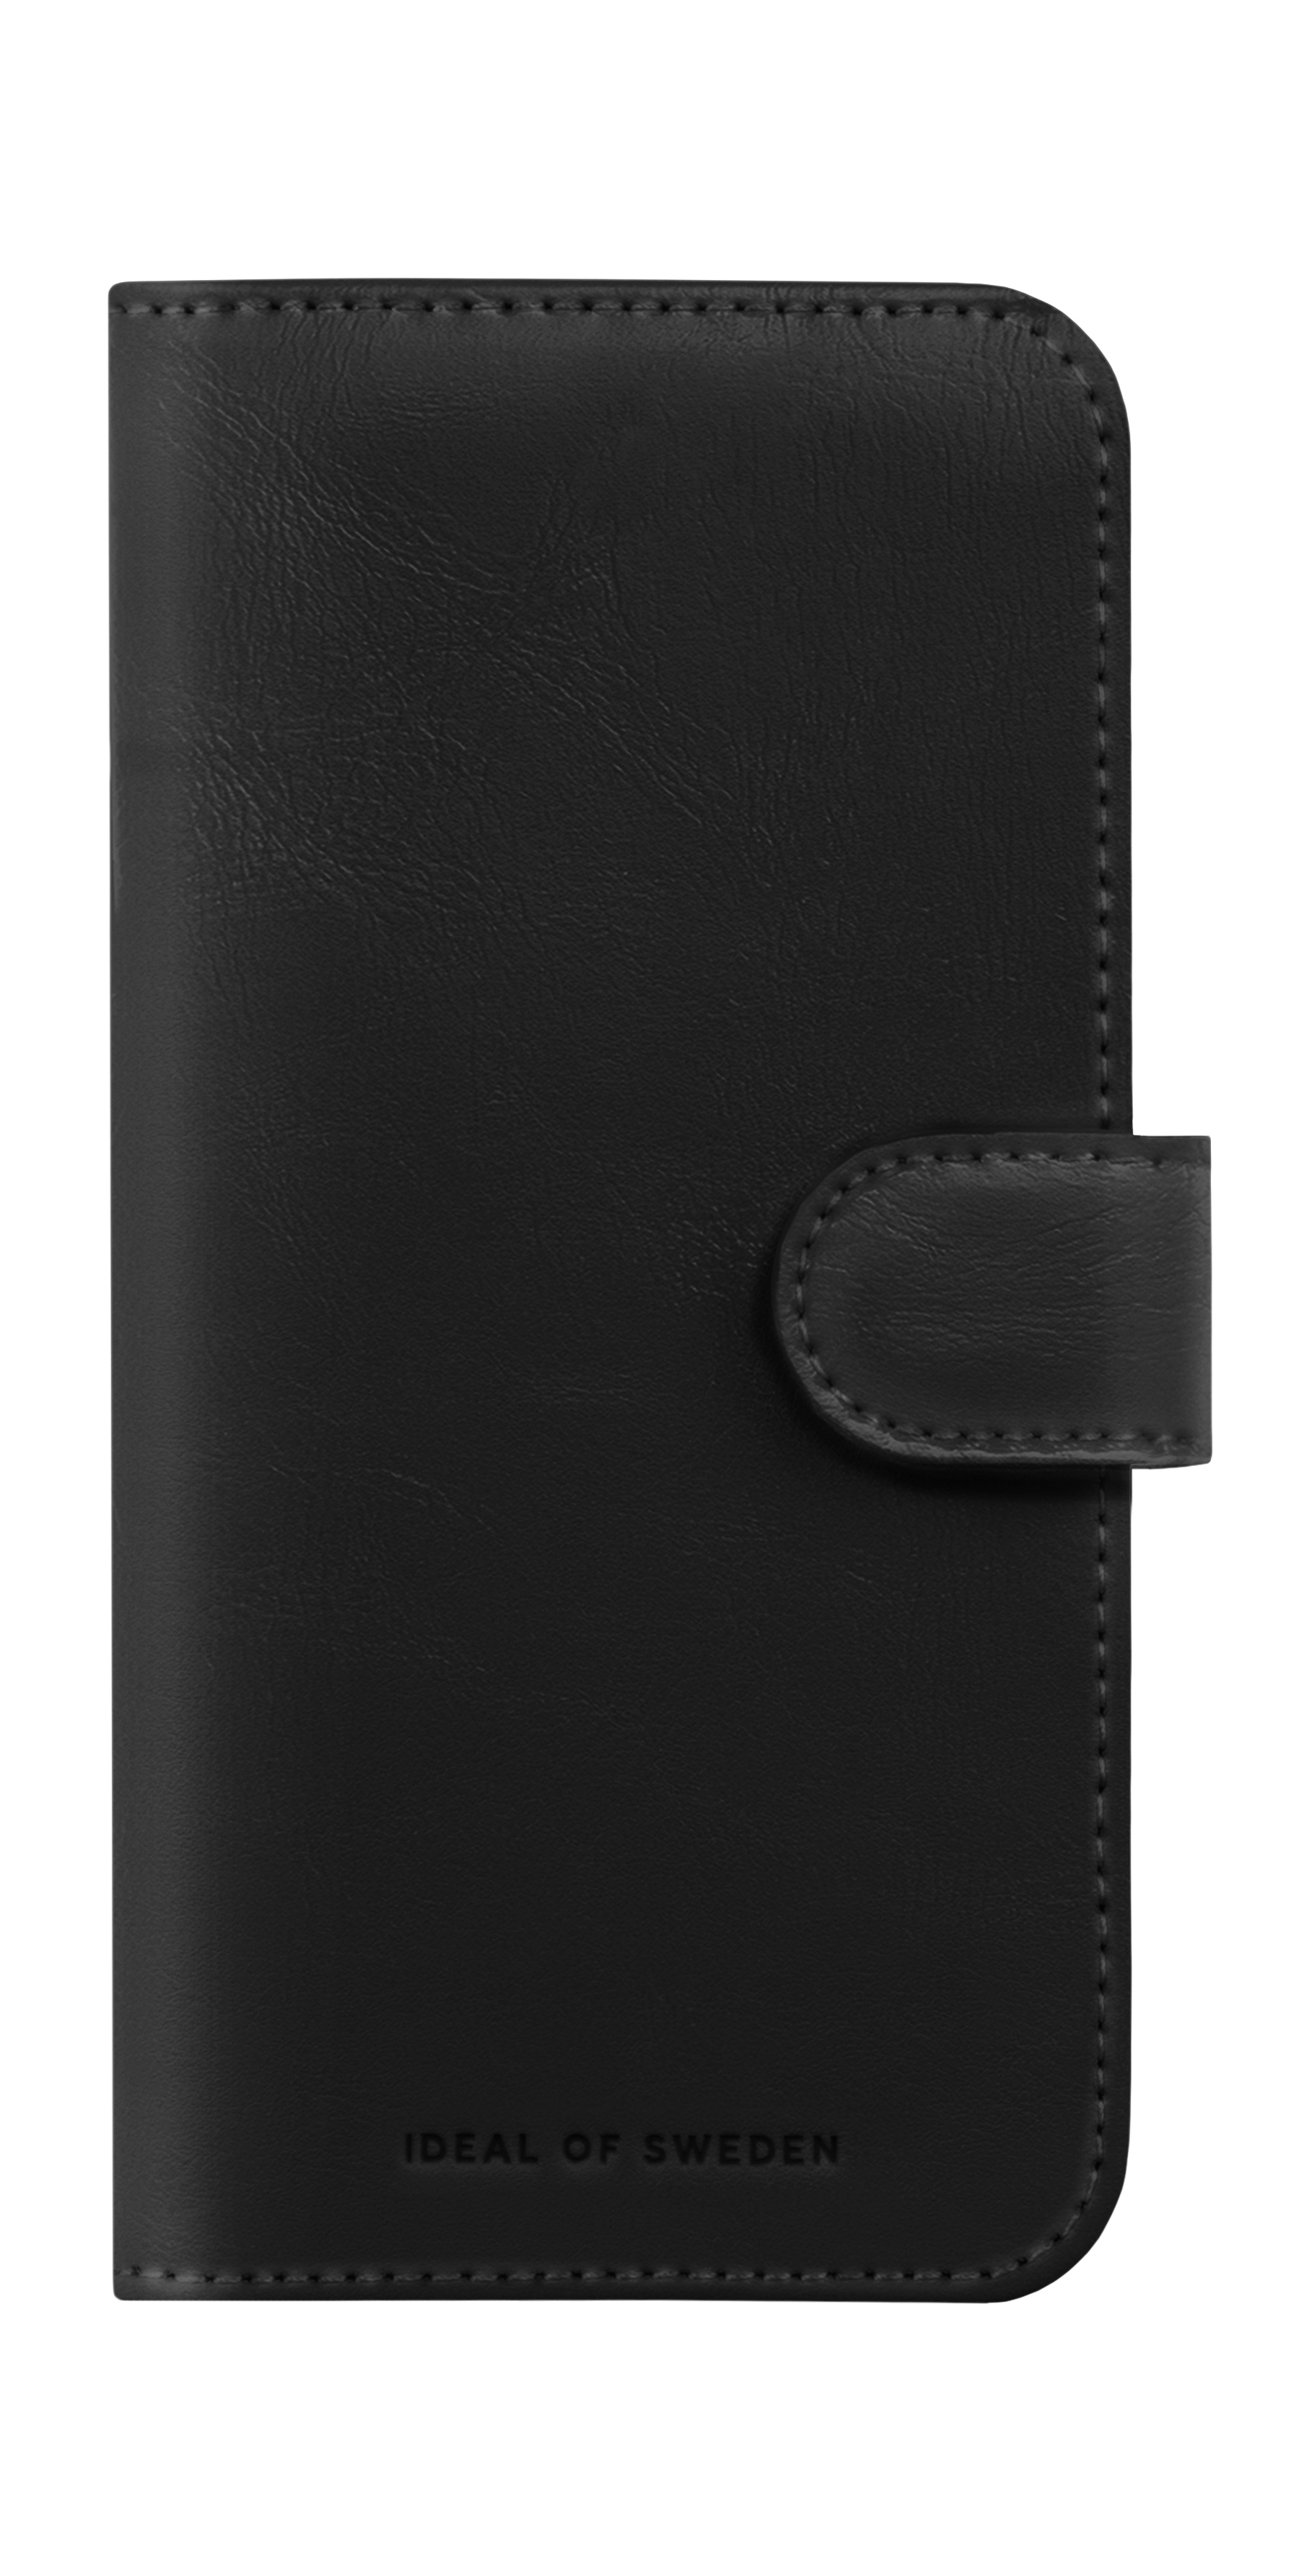 IDEAL OF SWEDEN Magnet Wallet+, Black iPhone Bookcover, 15, Apple